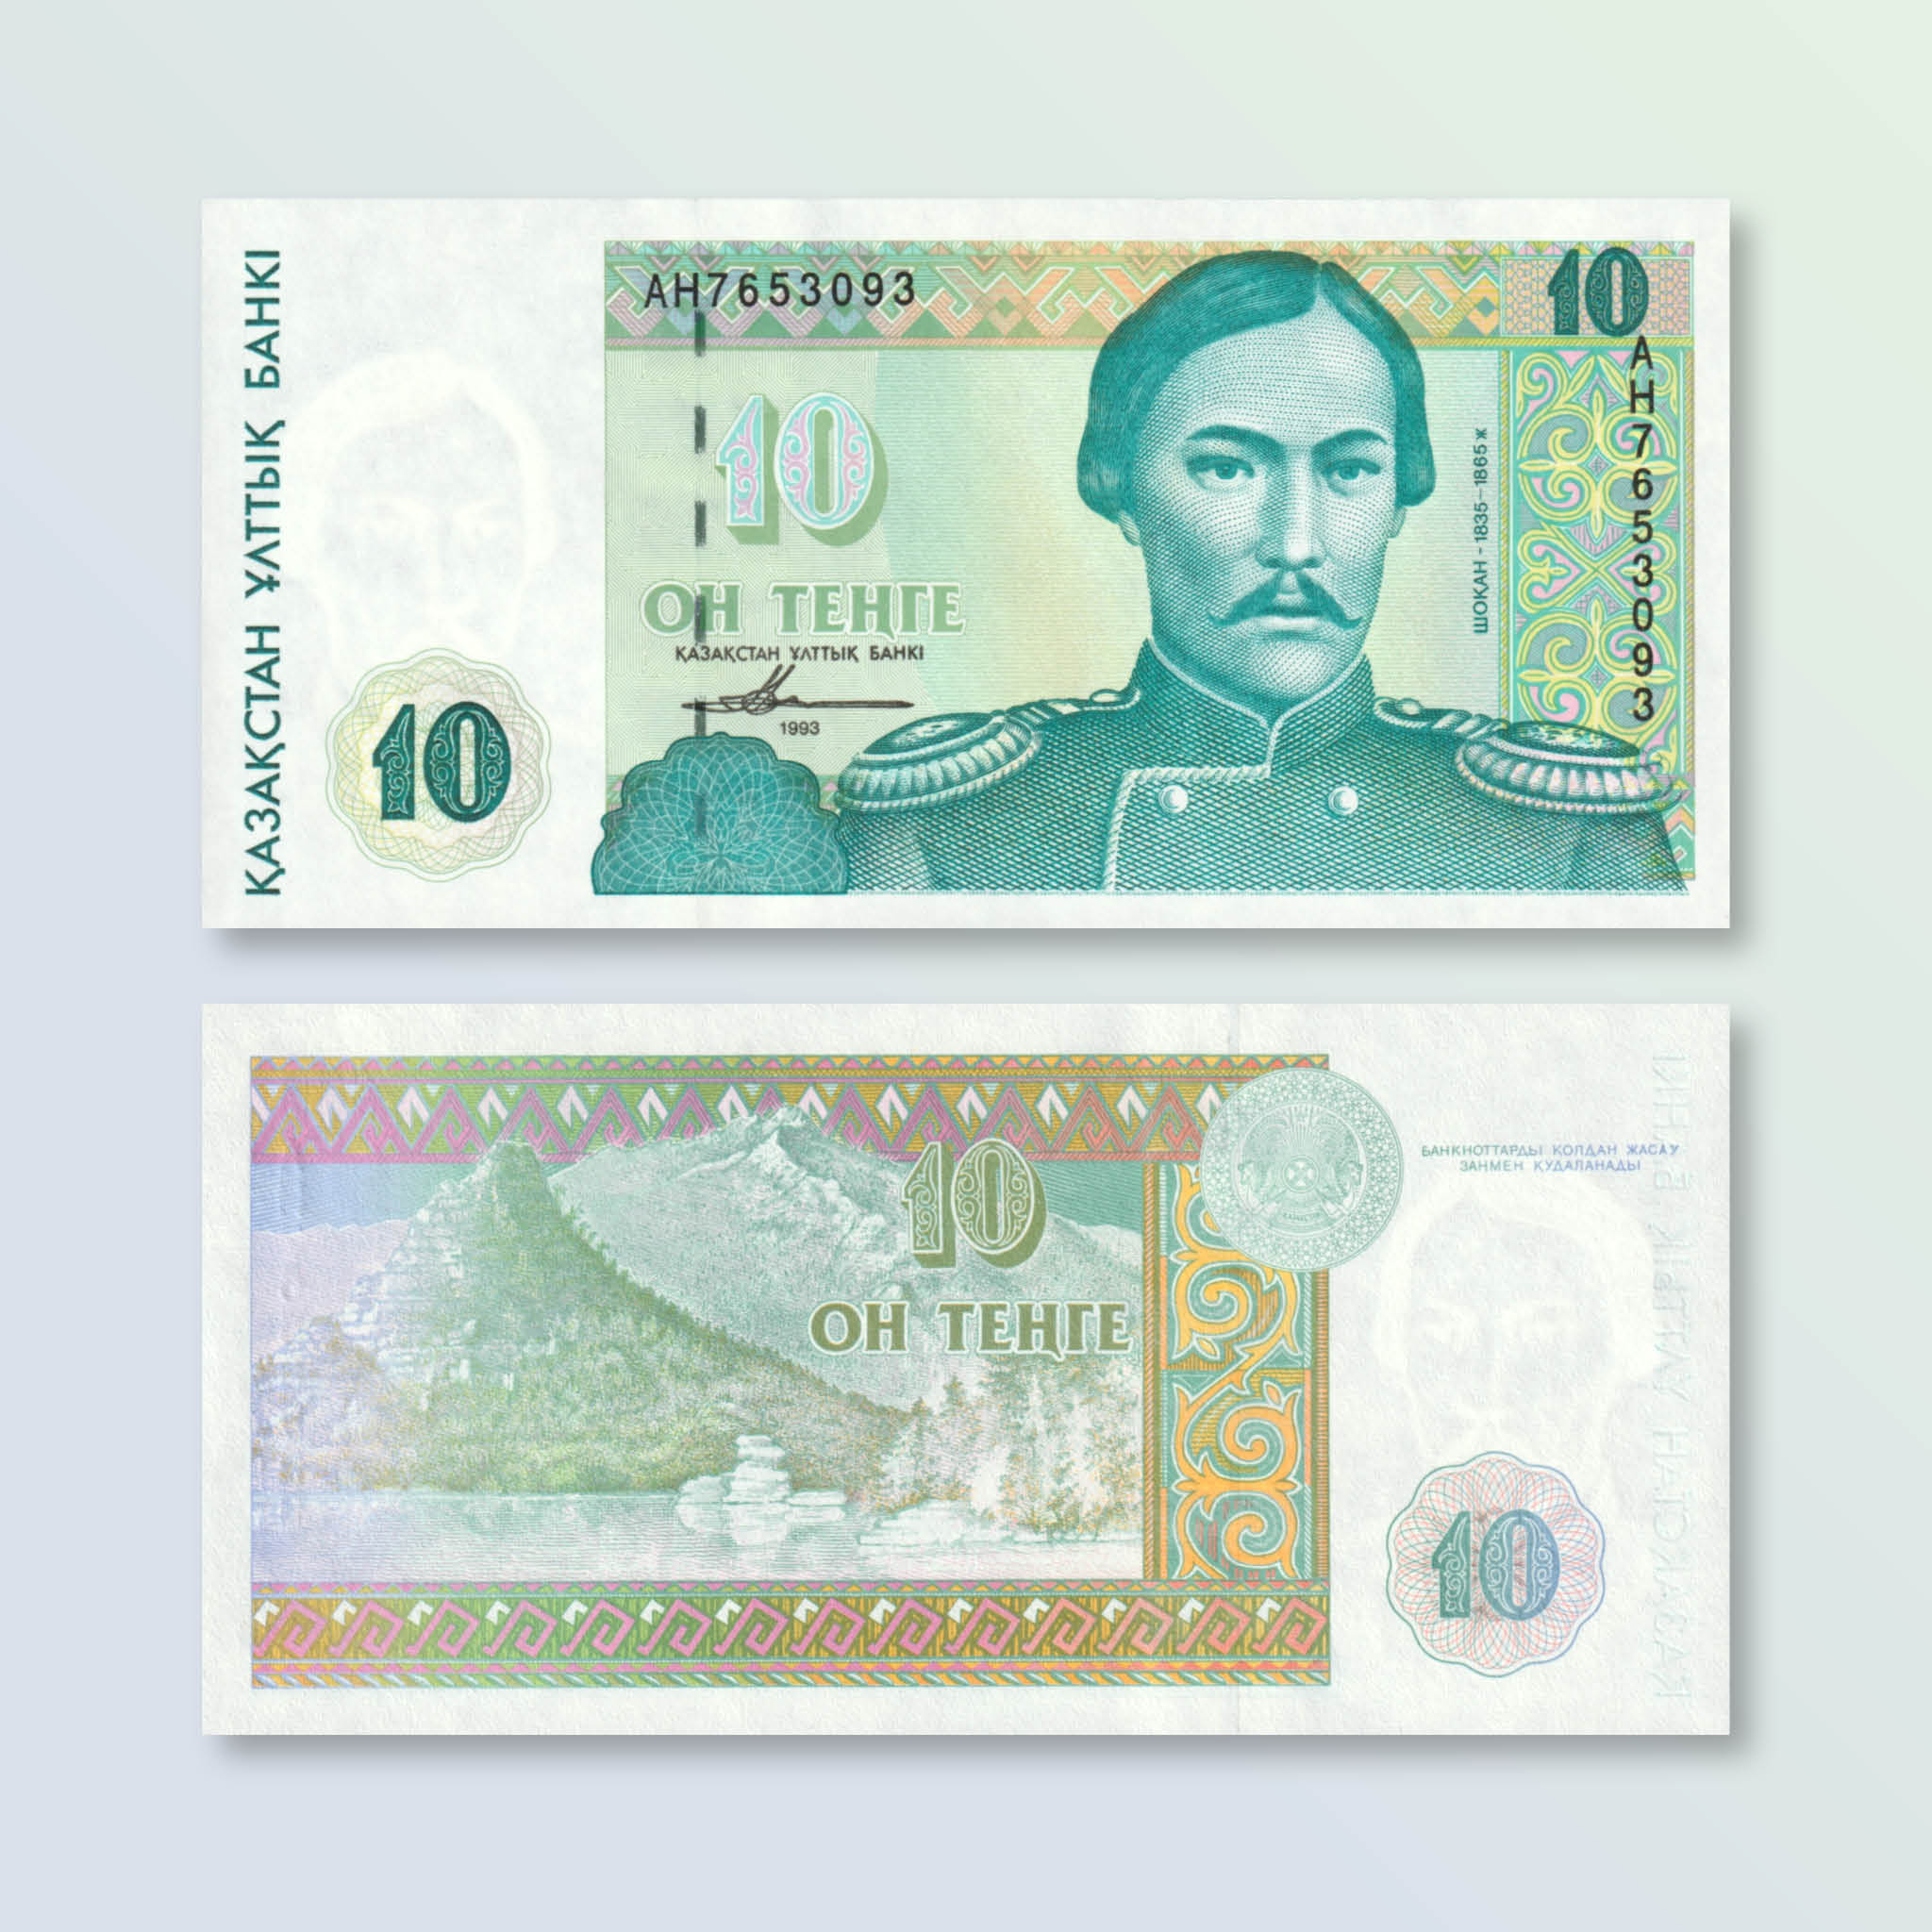 Kazakhstan 10 Tenge, 1993, B110a, P10a, UNC - Robert's World Money - World Banknotes